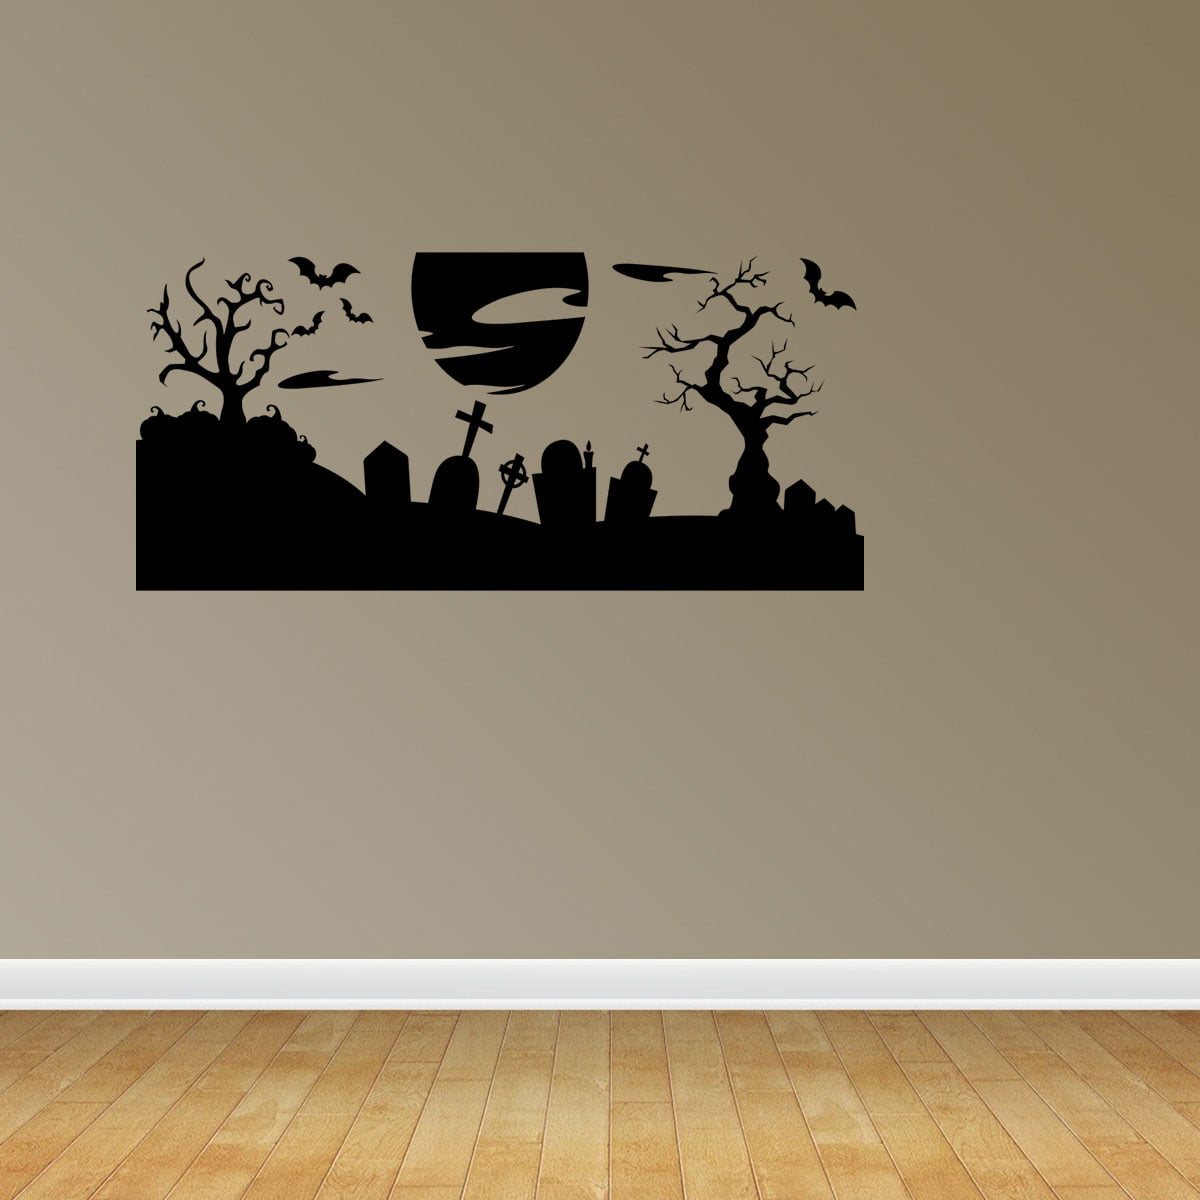 Spooky Halloween Wall Scene Stickers Vinyl Decal Door Window Decoration 5 sizes 